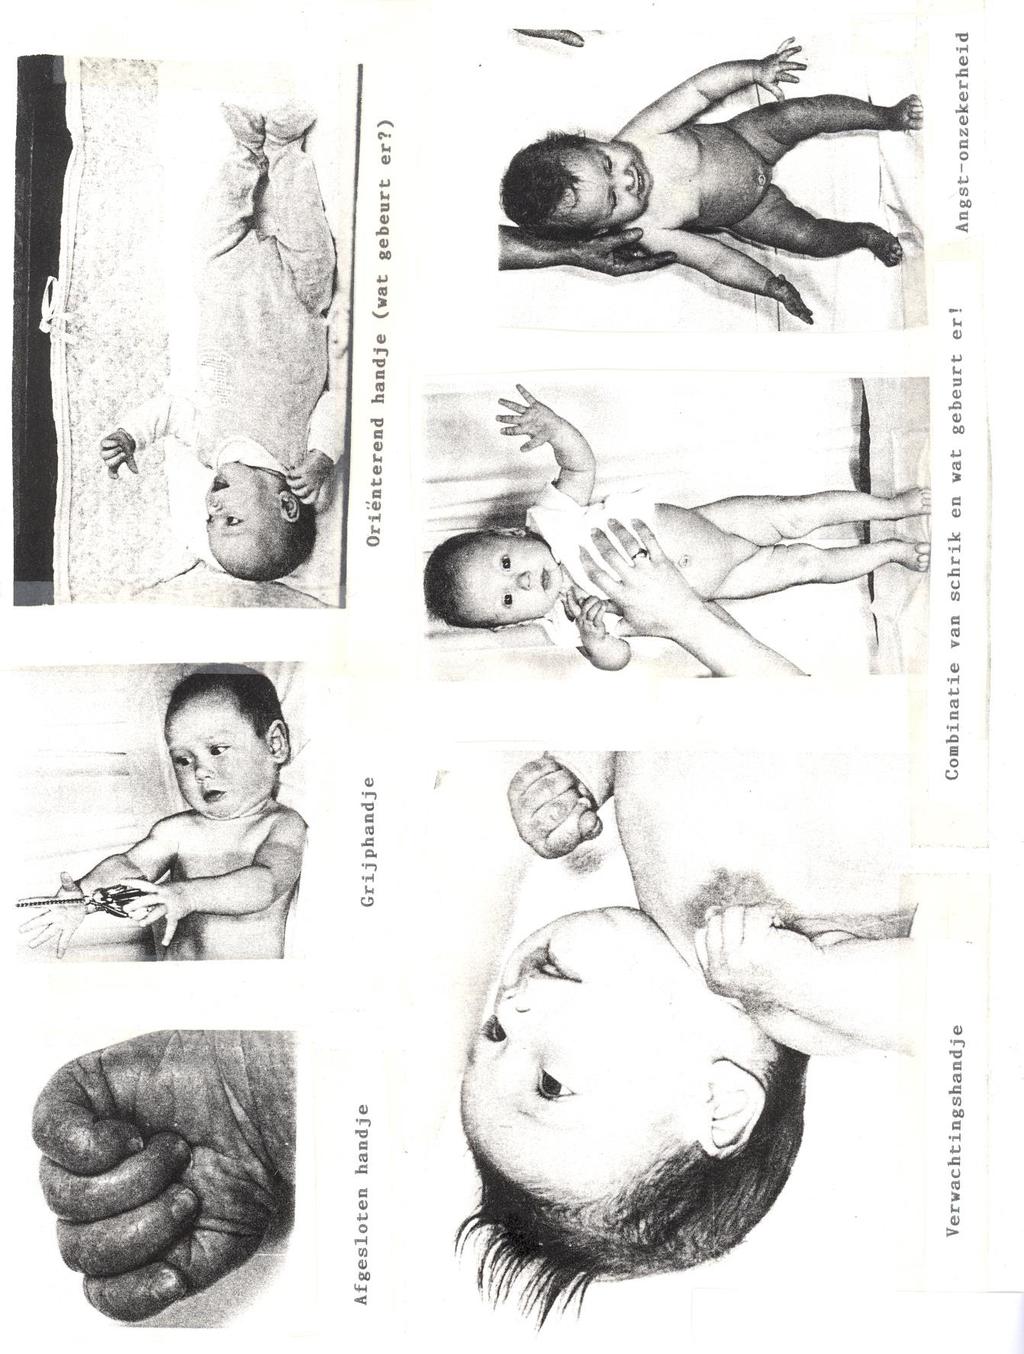 Voorbeelden zijn: ontspannen handje, vingers liggen los om het duimpje of helemaal open gestrekte en gespreide vingers De baby rust of slaapt. De baby is ontspannen.